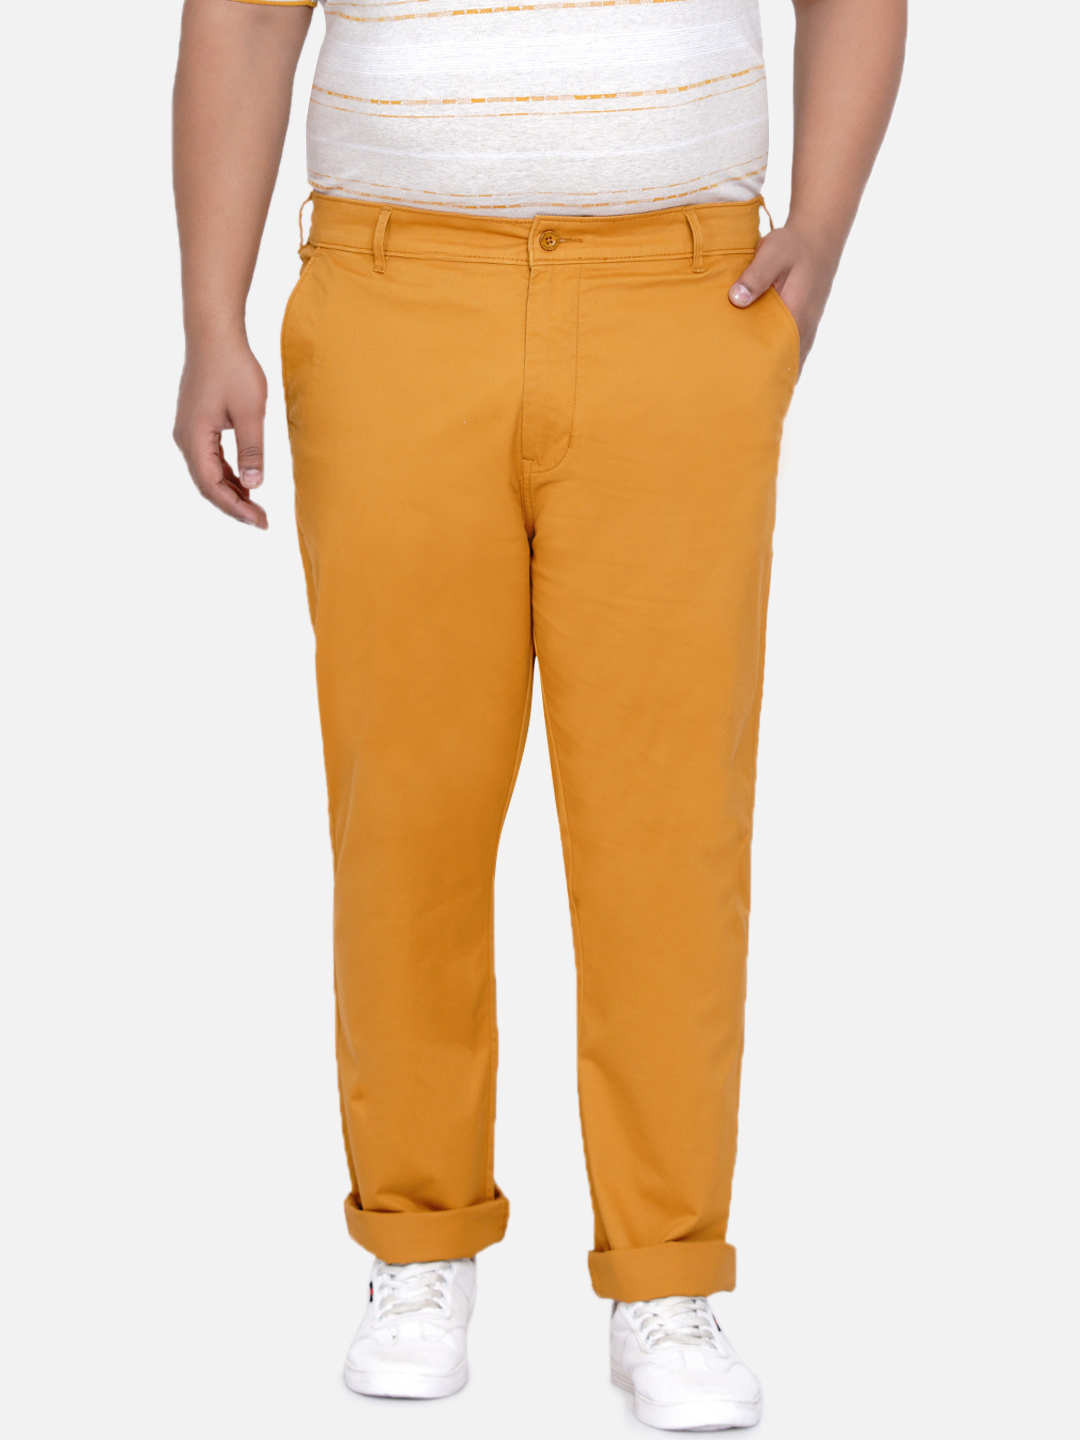 bottomwear/trousers/JPTR2161P/jptr2161p-2.jpg